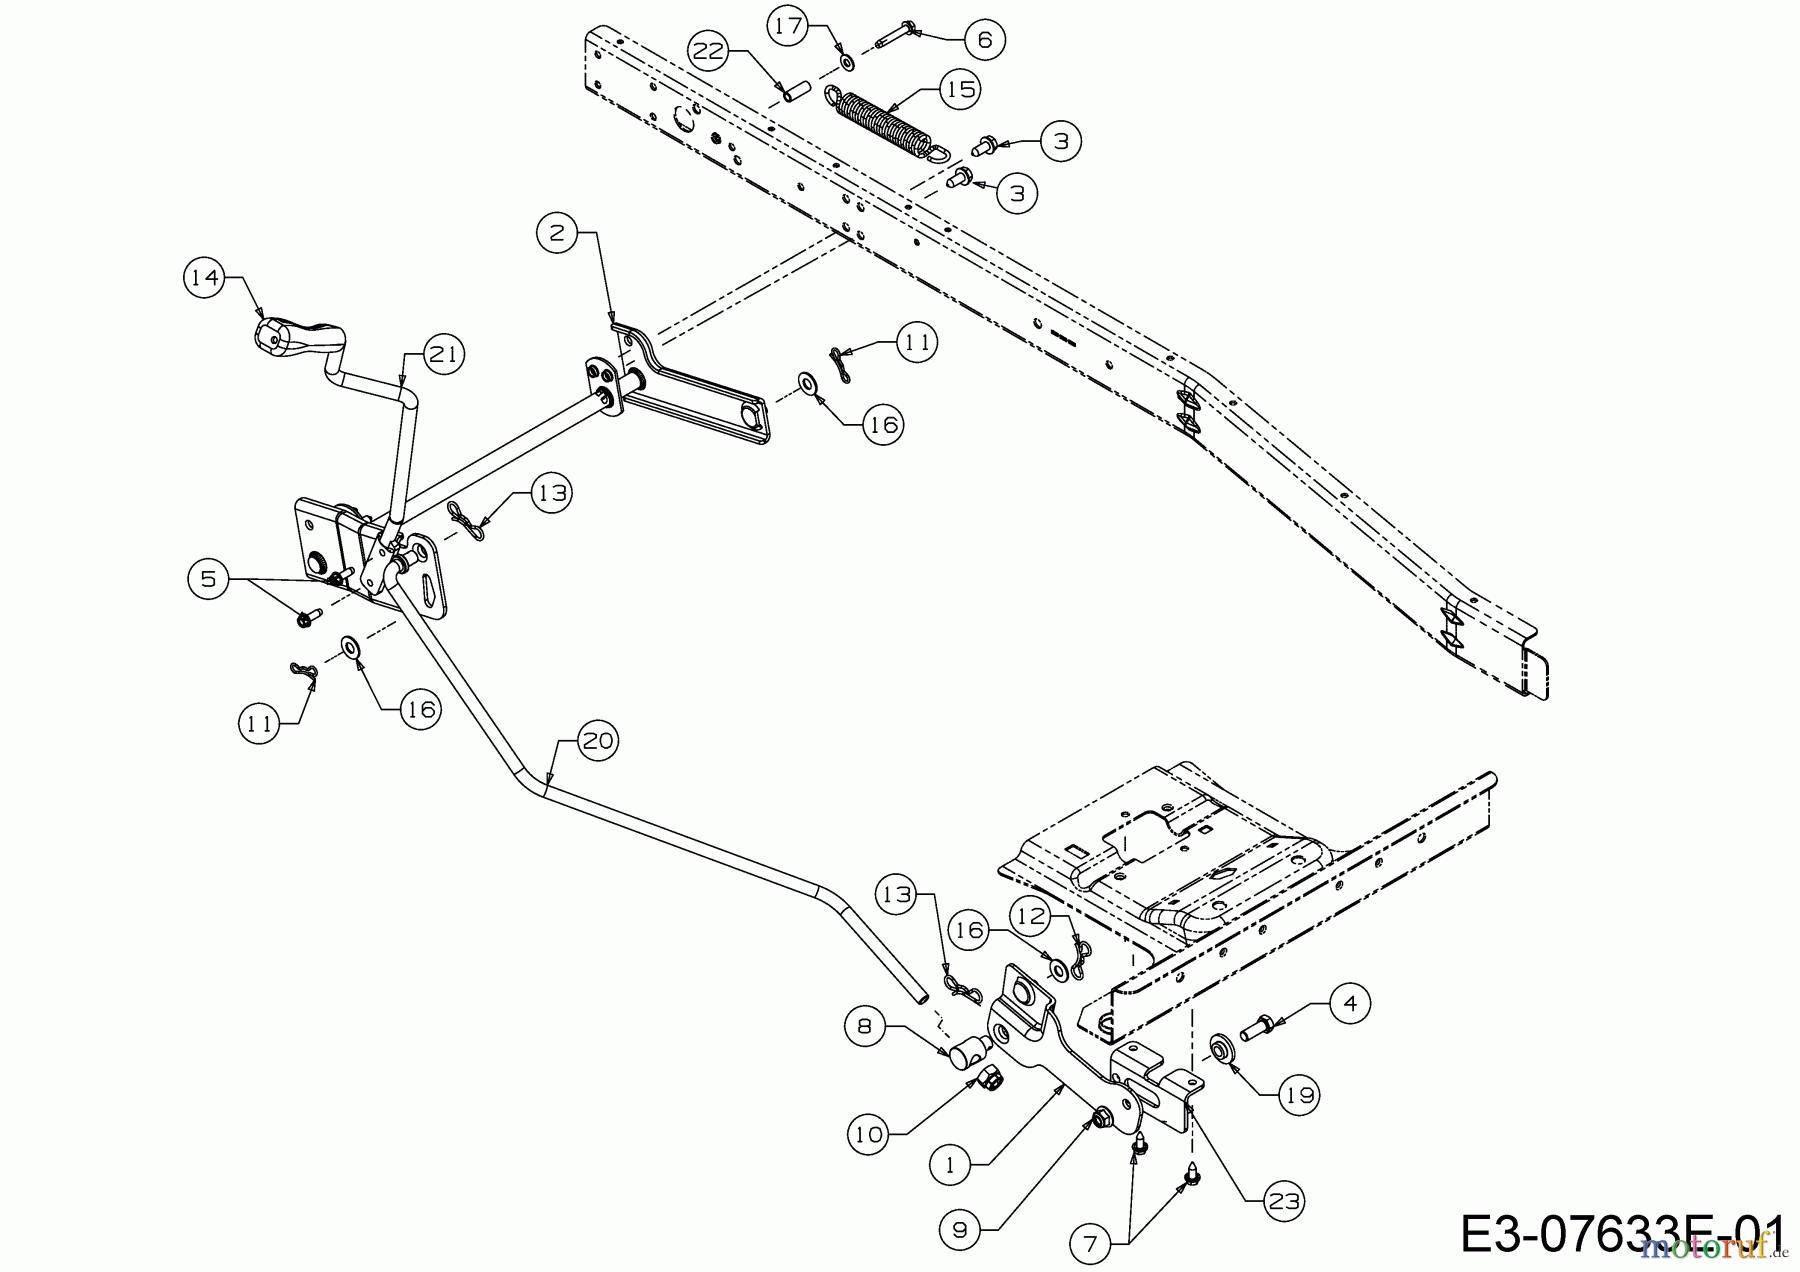  WOLF-Garten Expert Rasentraktoren Scooter Pro 13C226HD650  (2018) Mähwerksaushebung